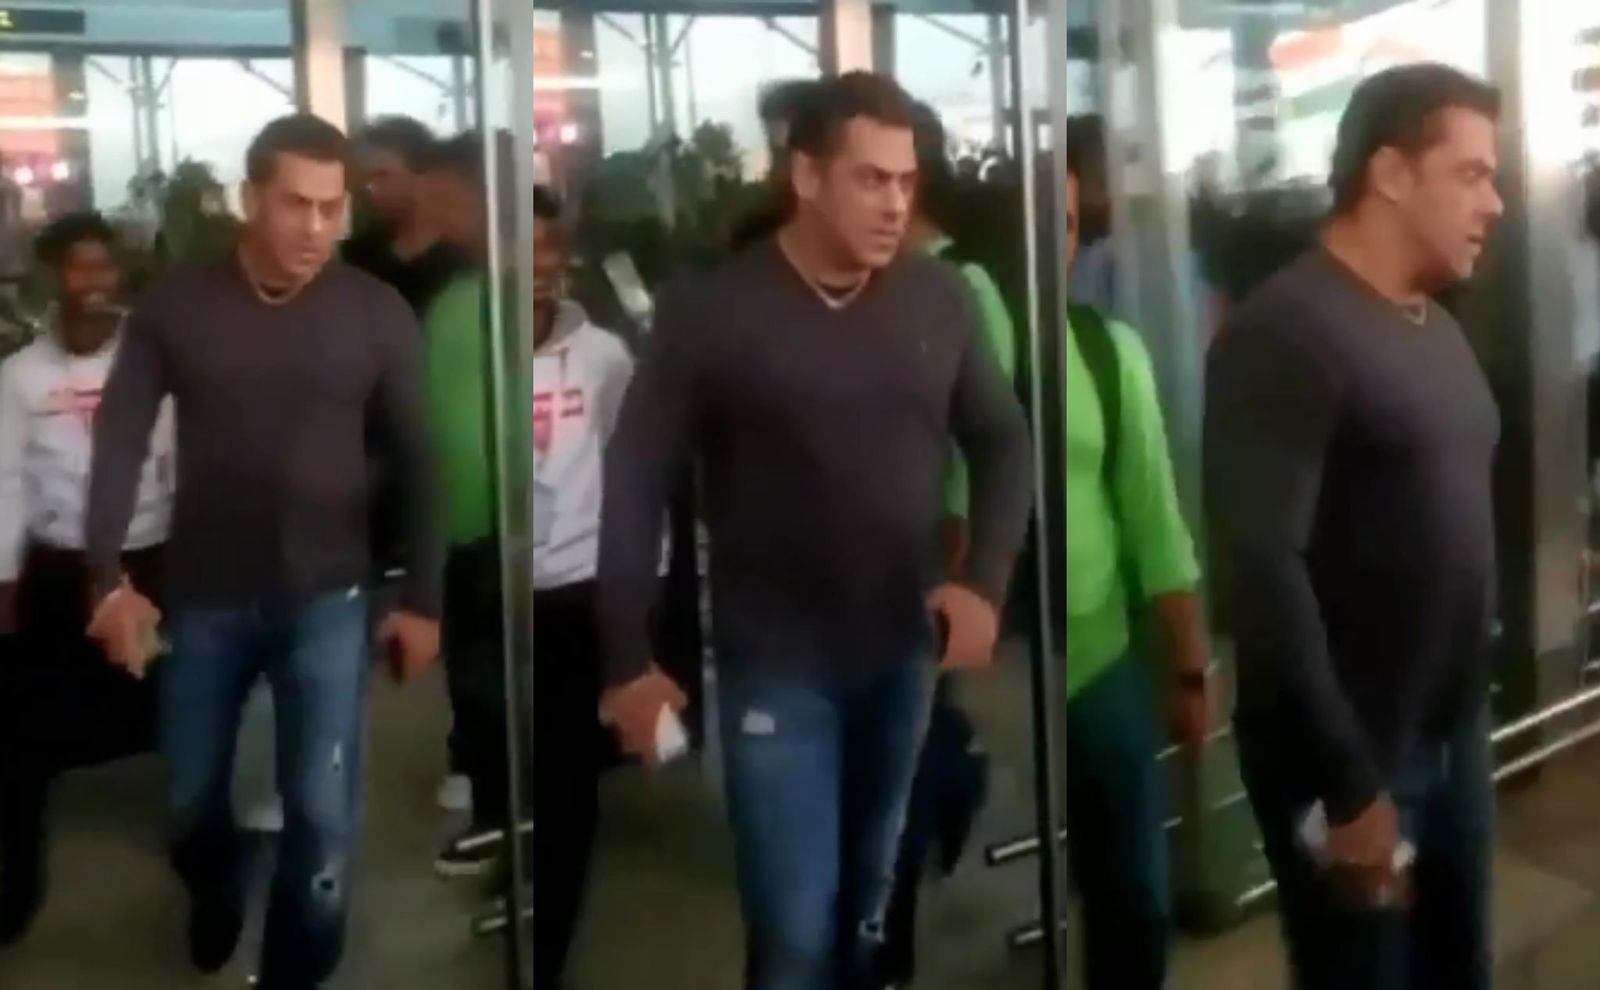 सलमान खान के अन्दर का एंग्री यंग मैन आया बाहर, गोवा एयरपोर्ट पर छीना फैन का फ़ोन; देखिए वायरल वीडियो!